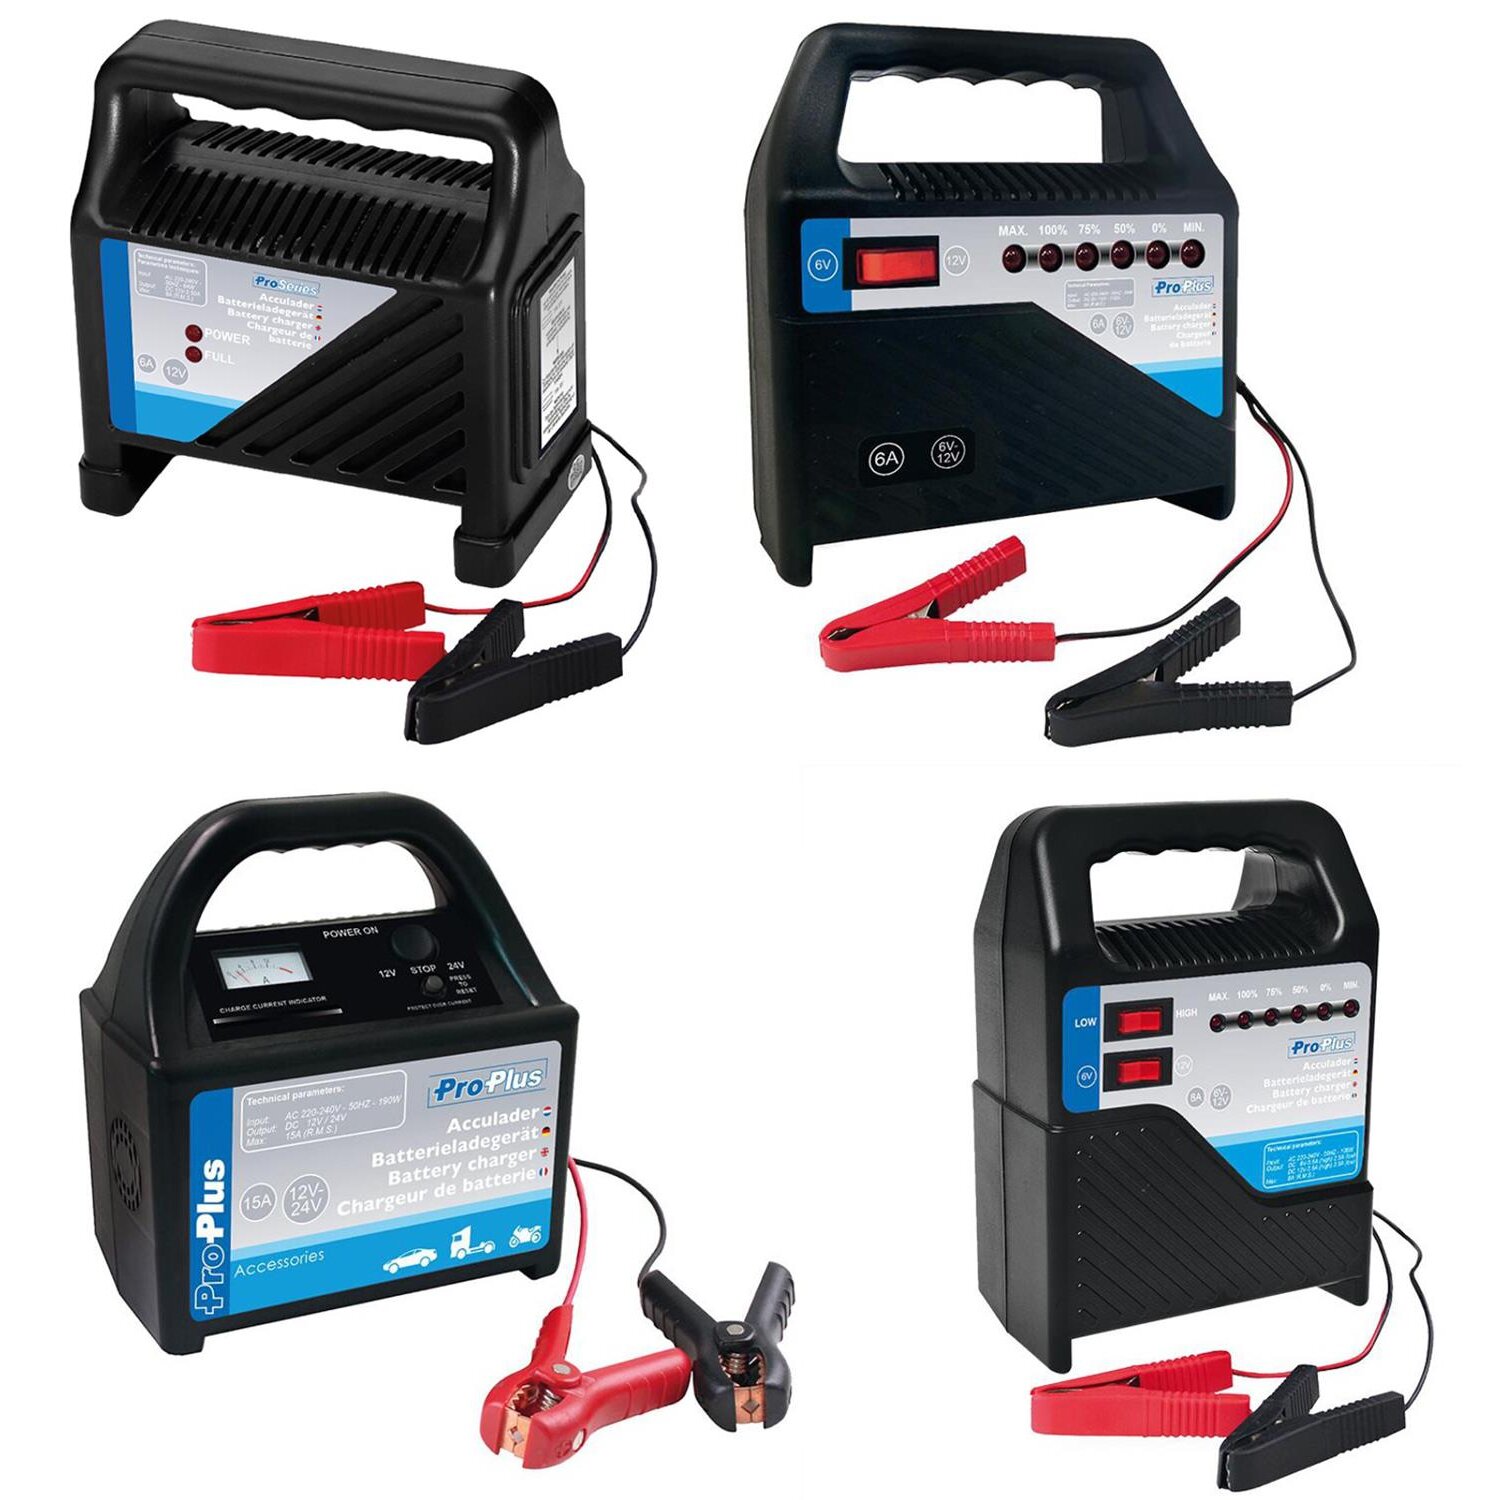 Autobatterie-Ladegerät 6a 12v Auto und Motorrad Batterie ladegerät